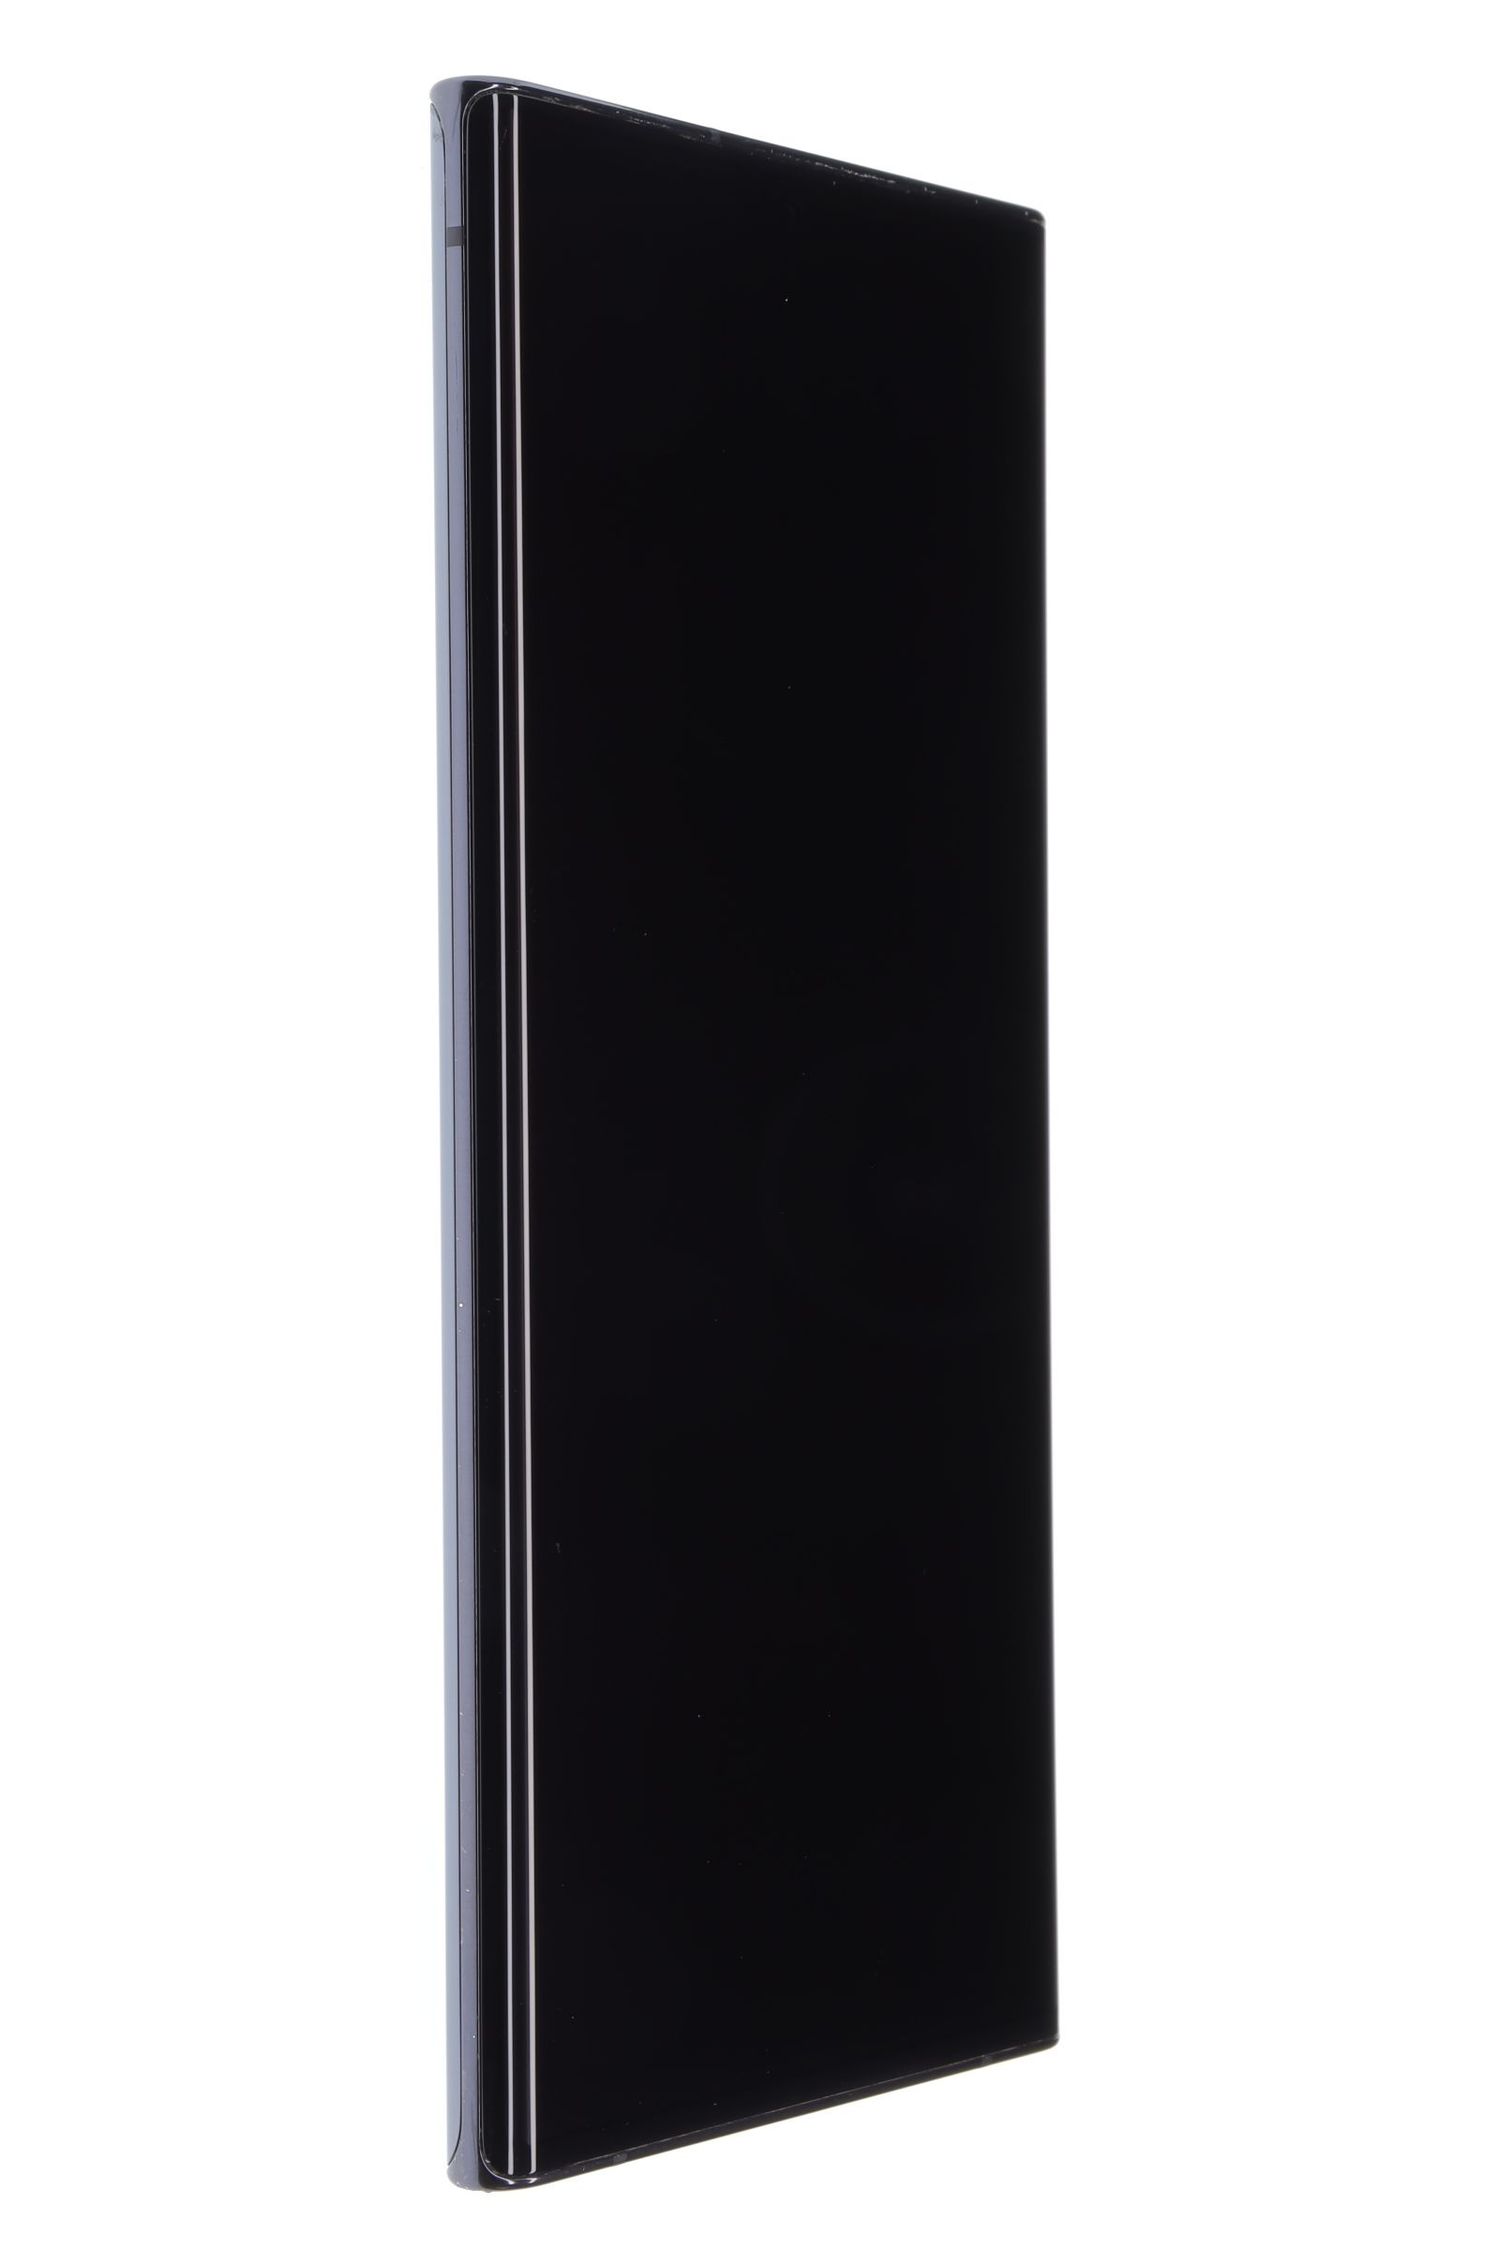 Κινητό τηλέφωνο Samsung Galaxy Note 20 Ultra 5G Dual Sim, Black, 256 GB, Excelent